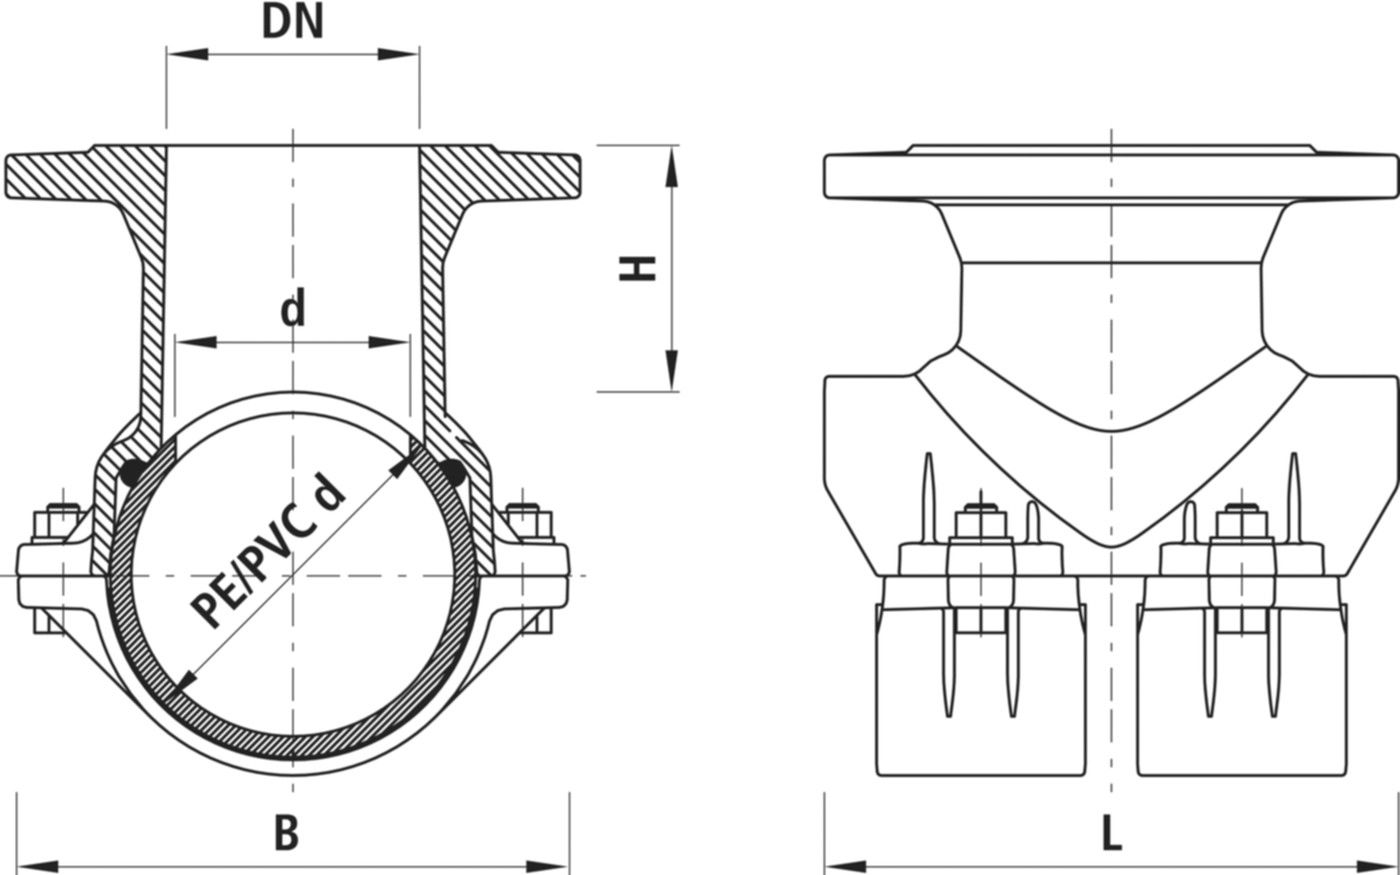 Haku-Anbohrschelle mit Flansch 5230 d 160mm / DN 80 - Hawle Hausanschluss- und Anbohrarmaturen